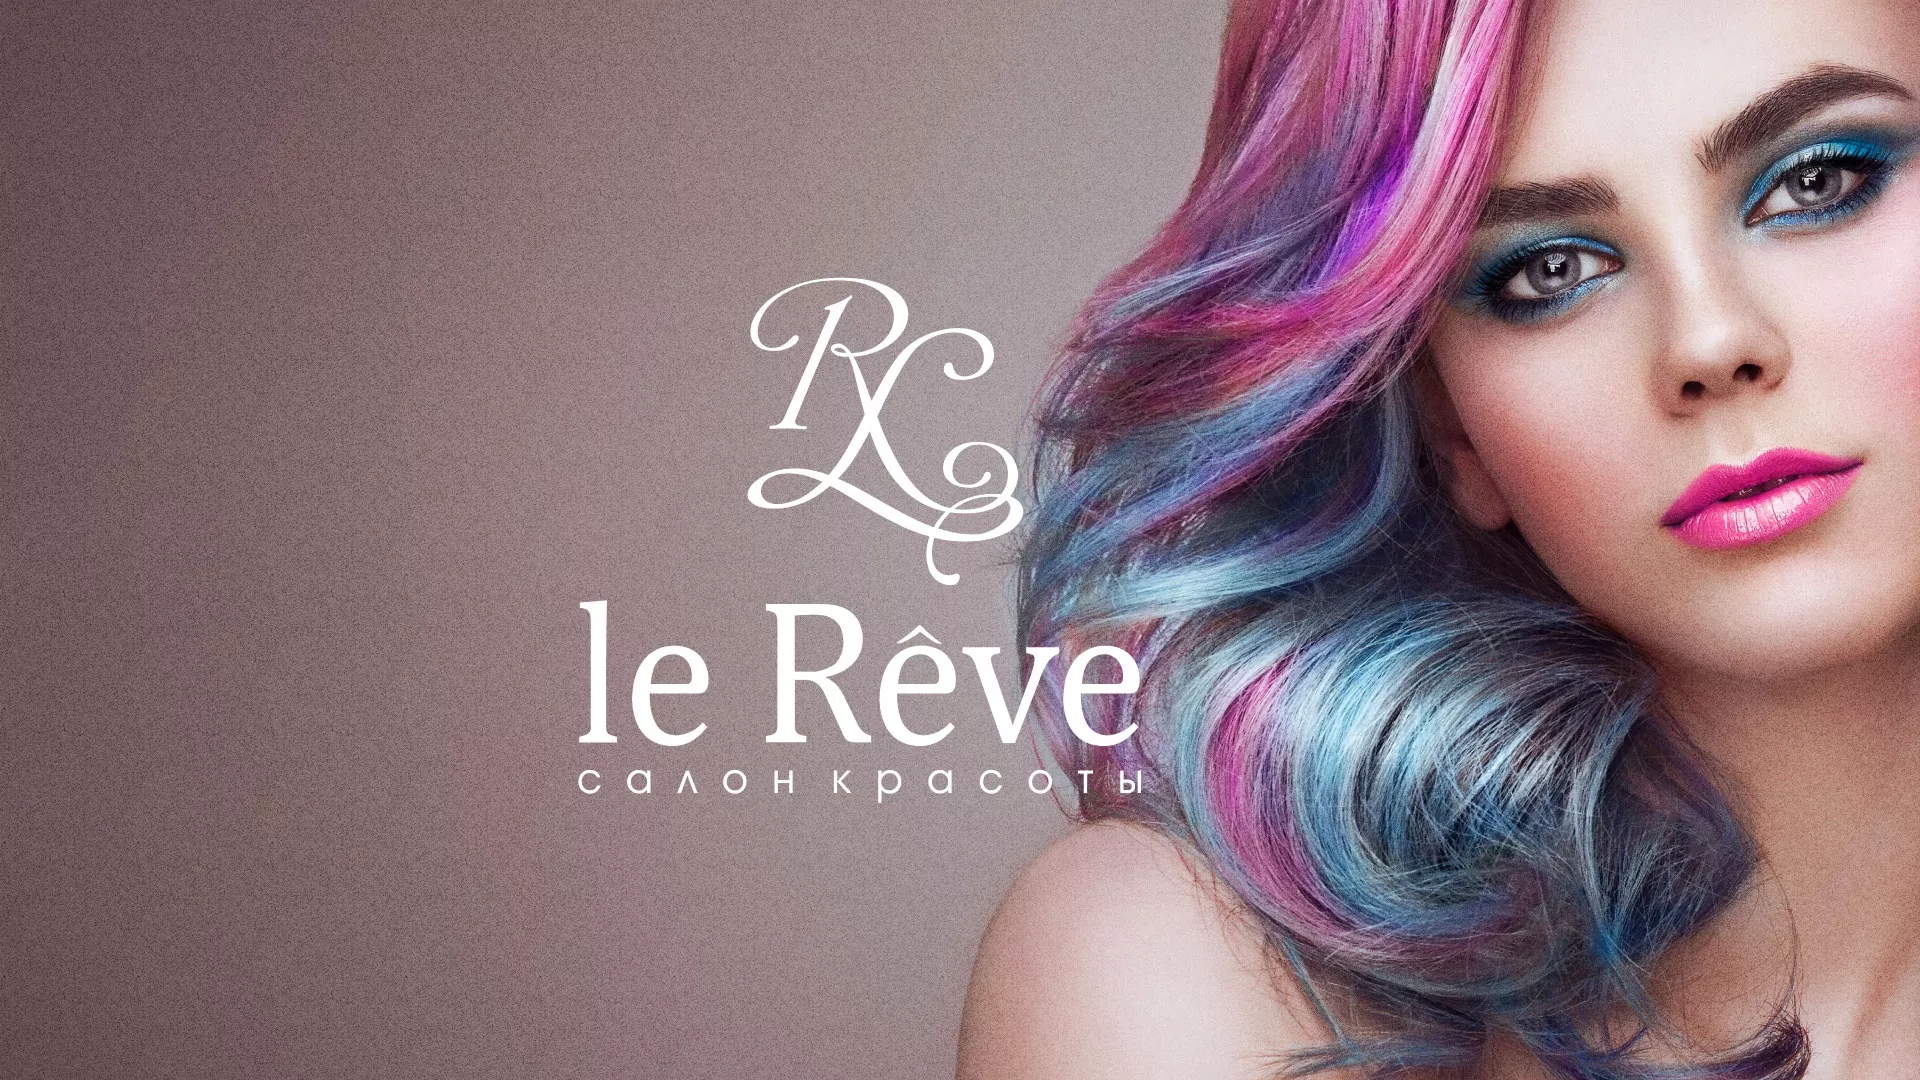 Создание сайта для салона красоты «Le Reve» в Гае